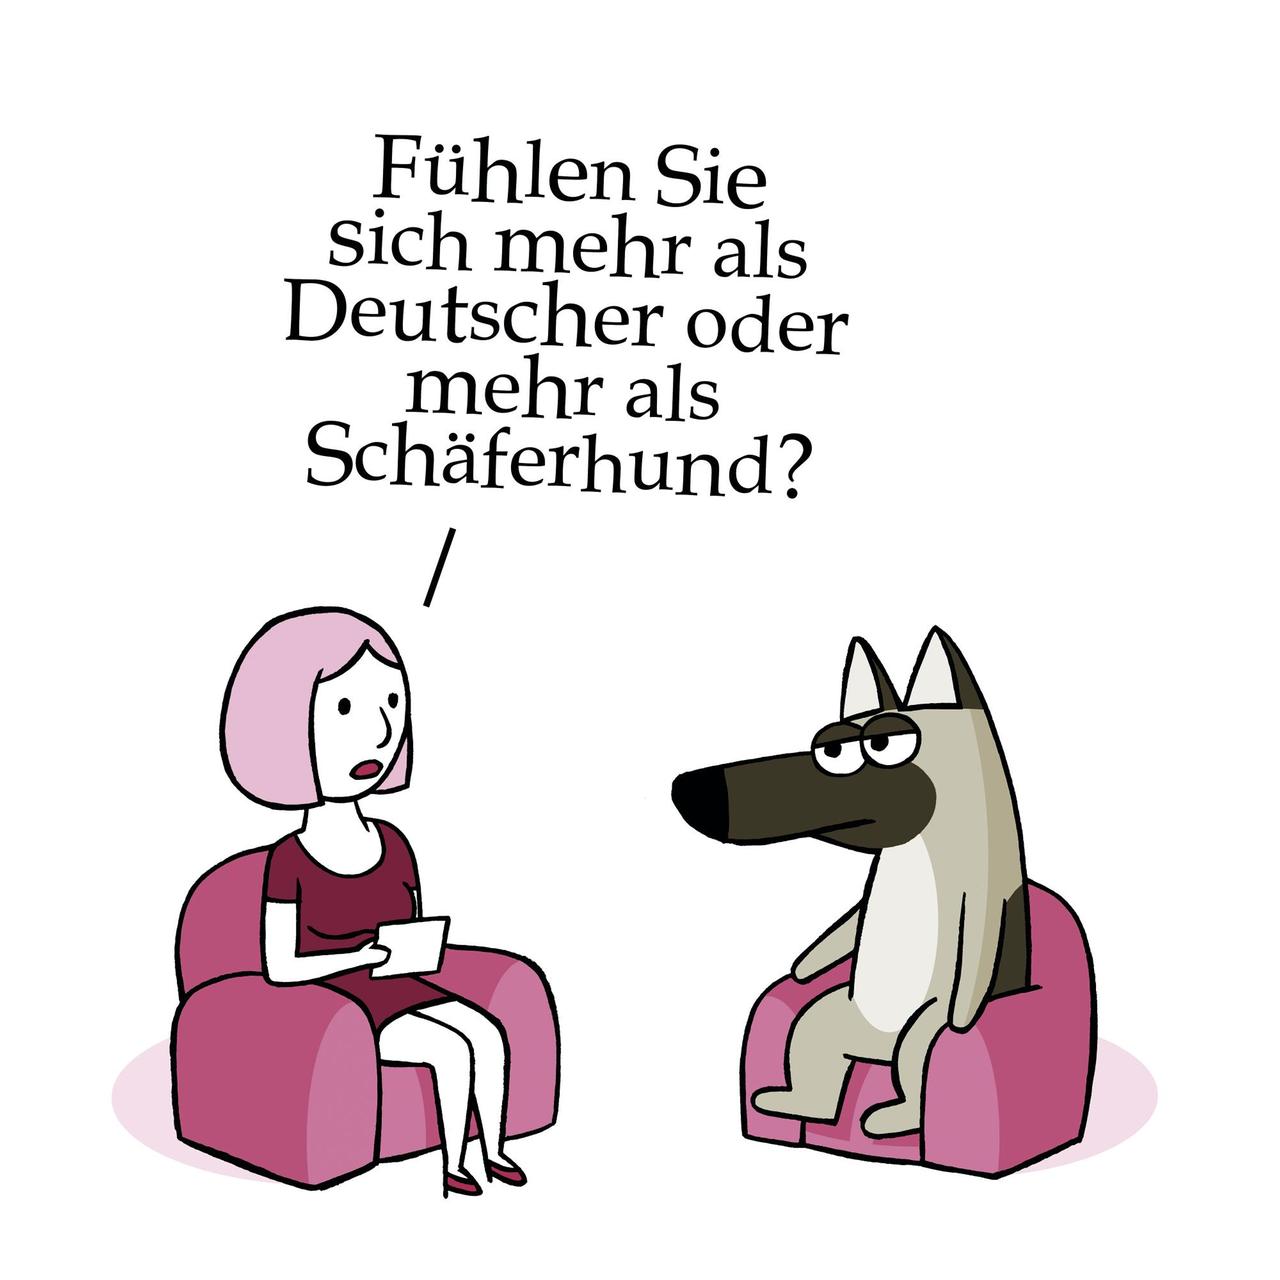 Eine Frau und ein Schäferhund sitzen einander in Sesseln gegenüber. Sie fragt: "Fühlen Sie sich mehr als Deutscher oder mehr als Schäferhund?"